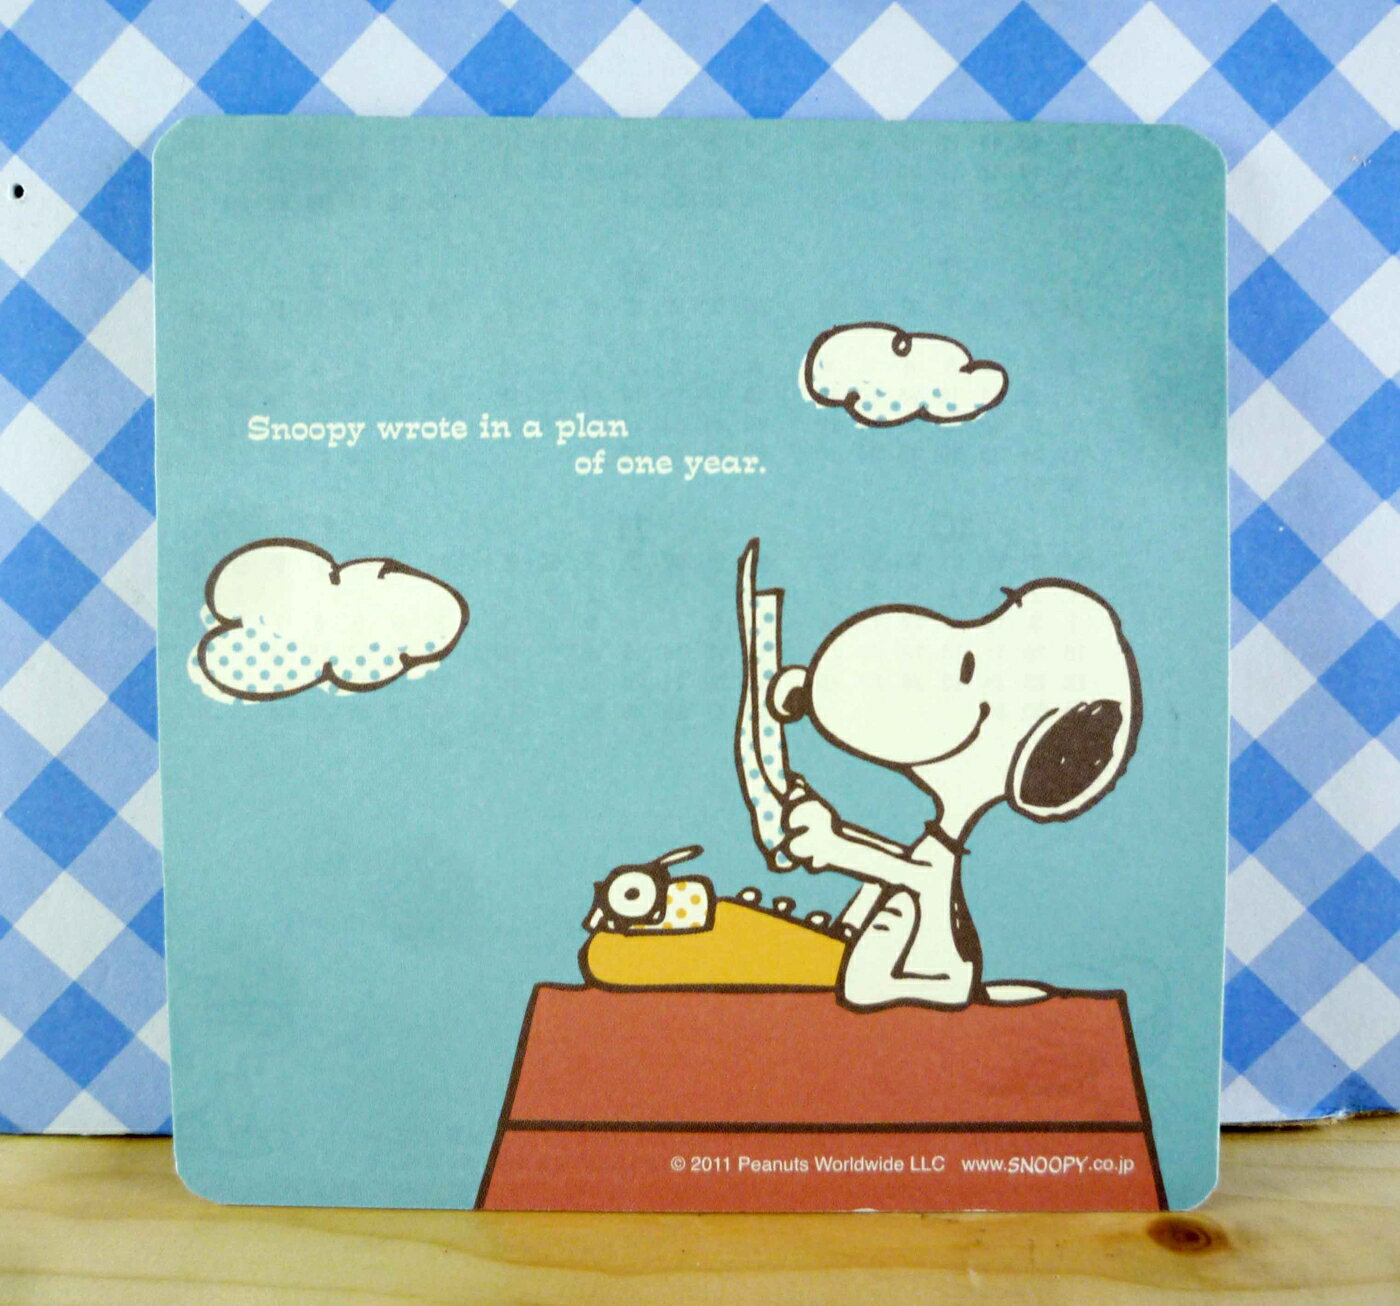 【震撼精品百貨】史奴比Peanuts Snoopy SNOOPY卡片-屋頂藍M 震撼日式精品百貨